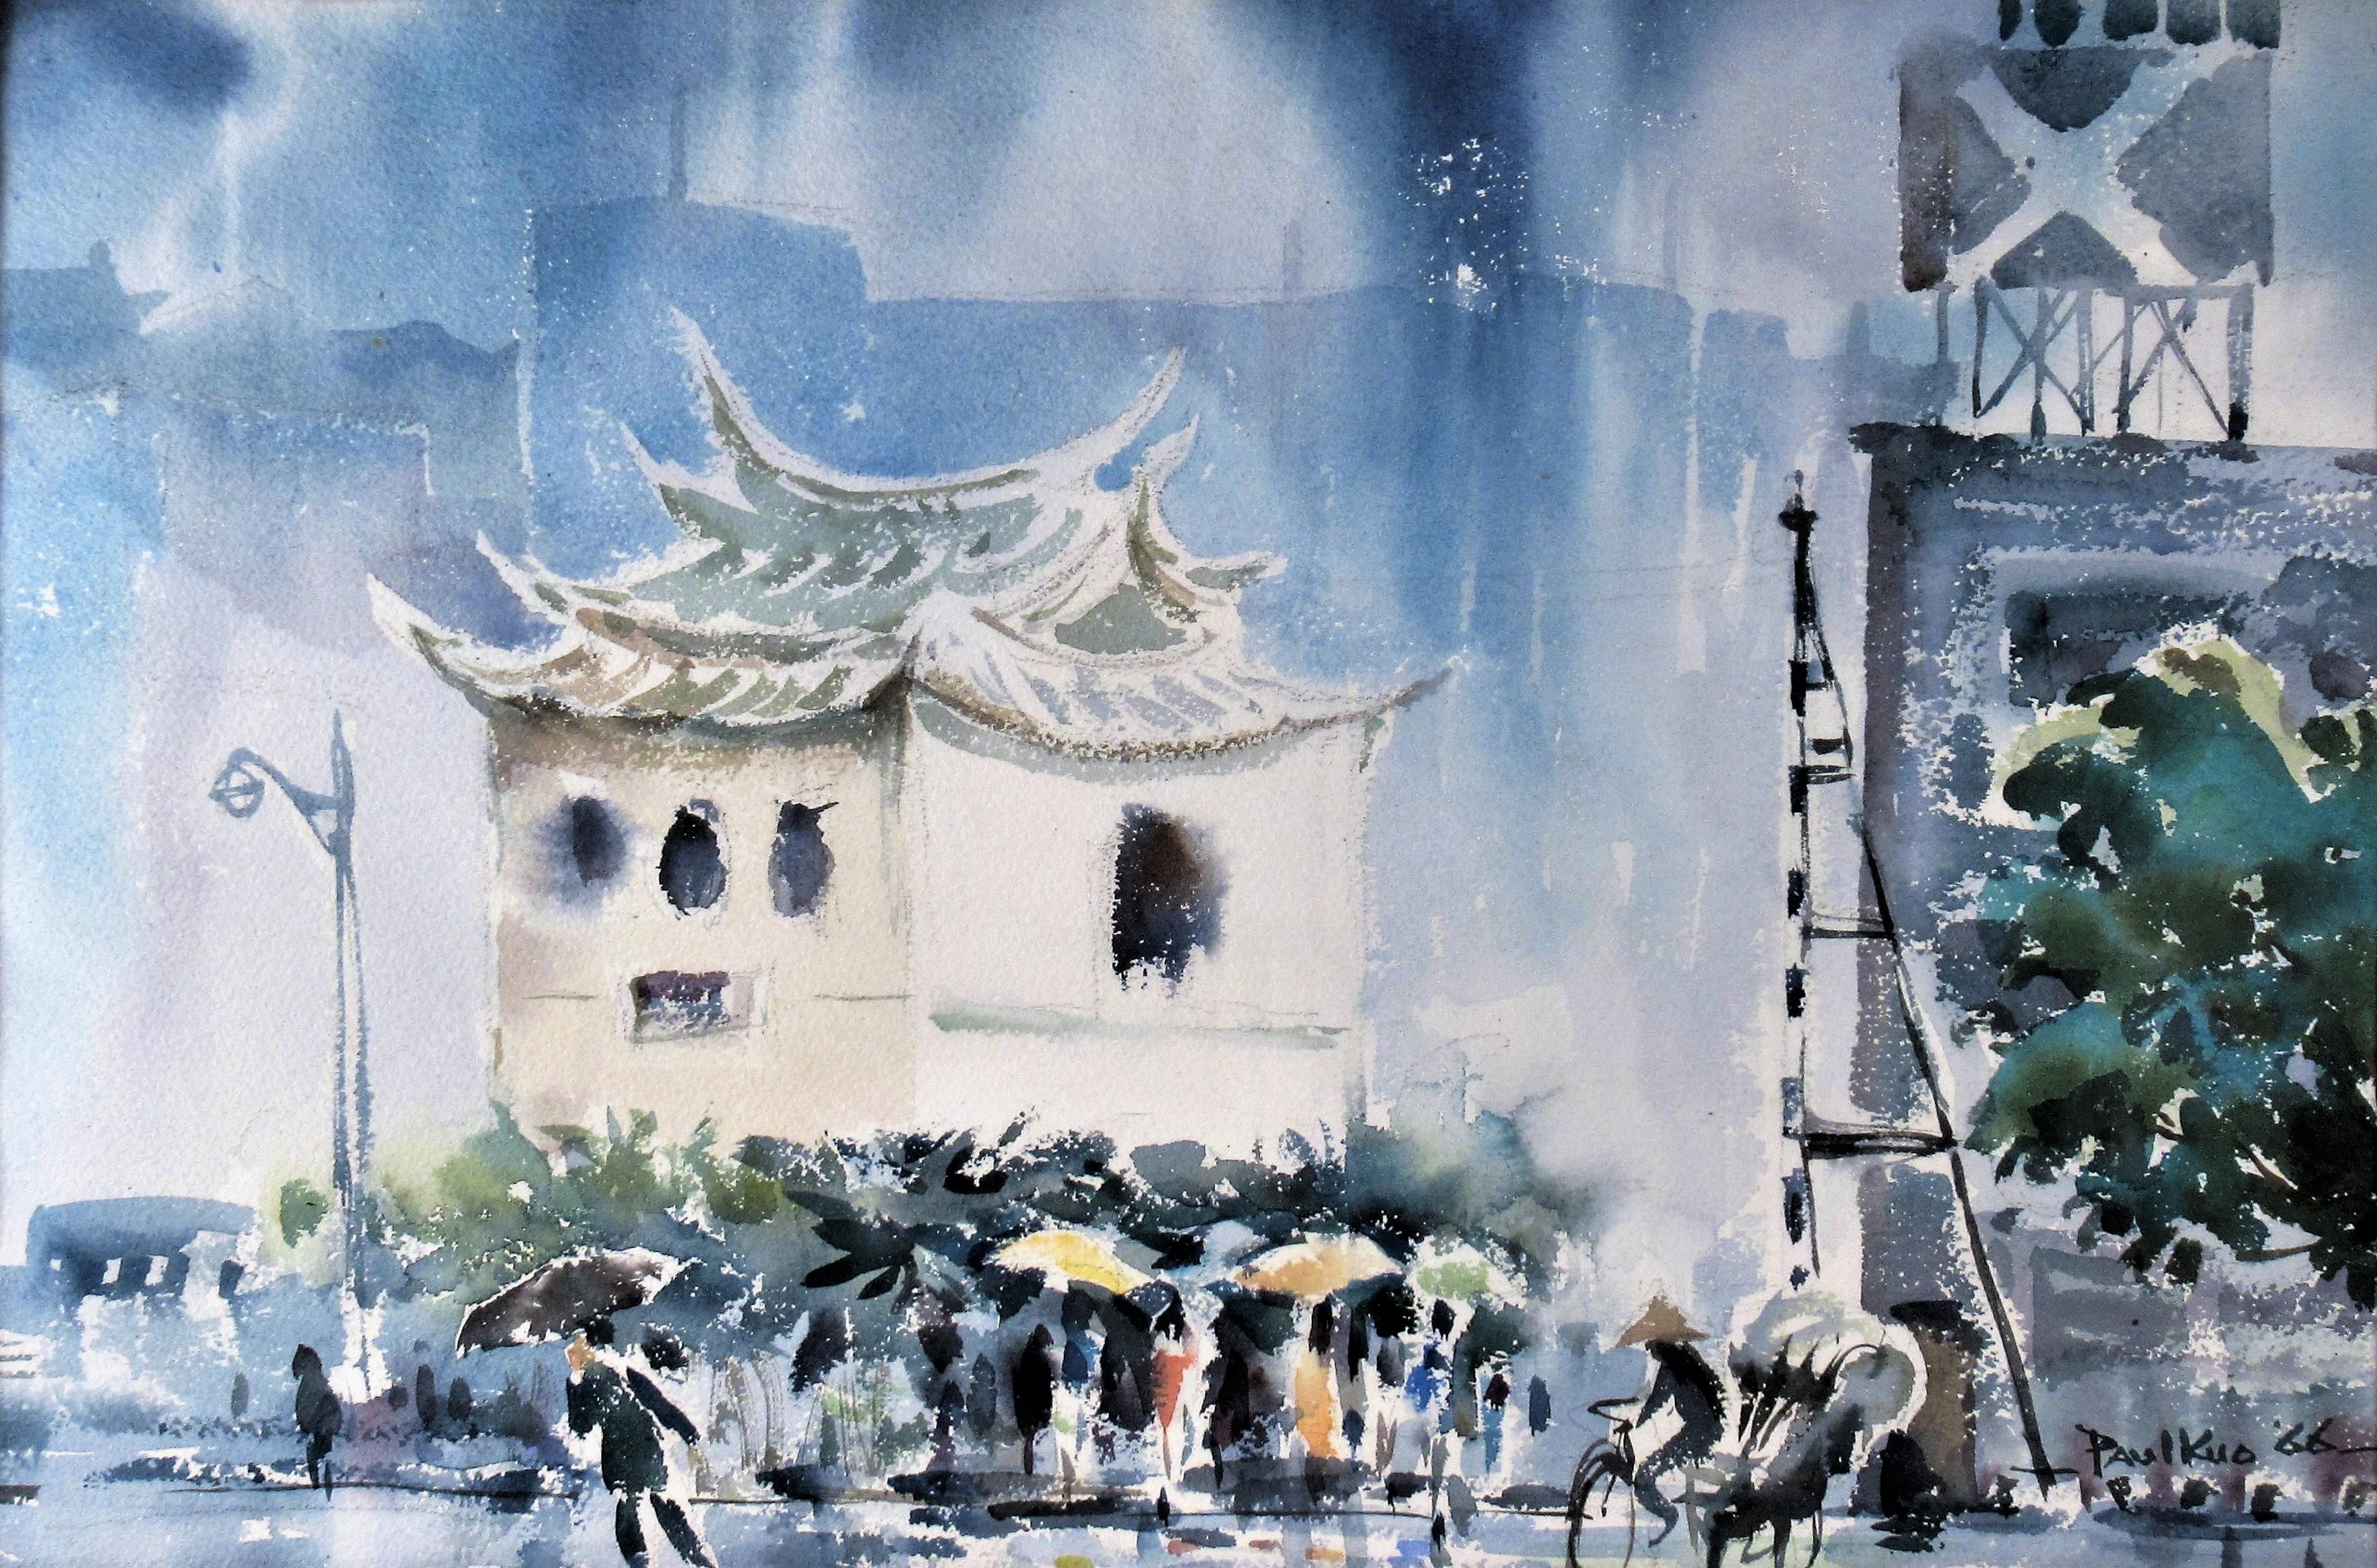 Chinatown Under the Rain - Art by Paul Kuo